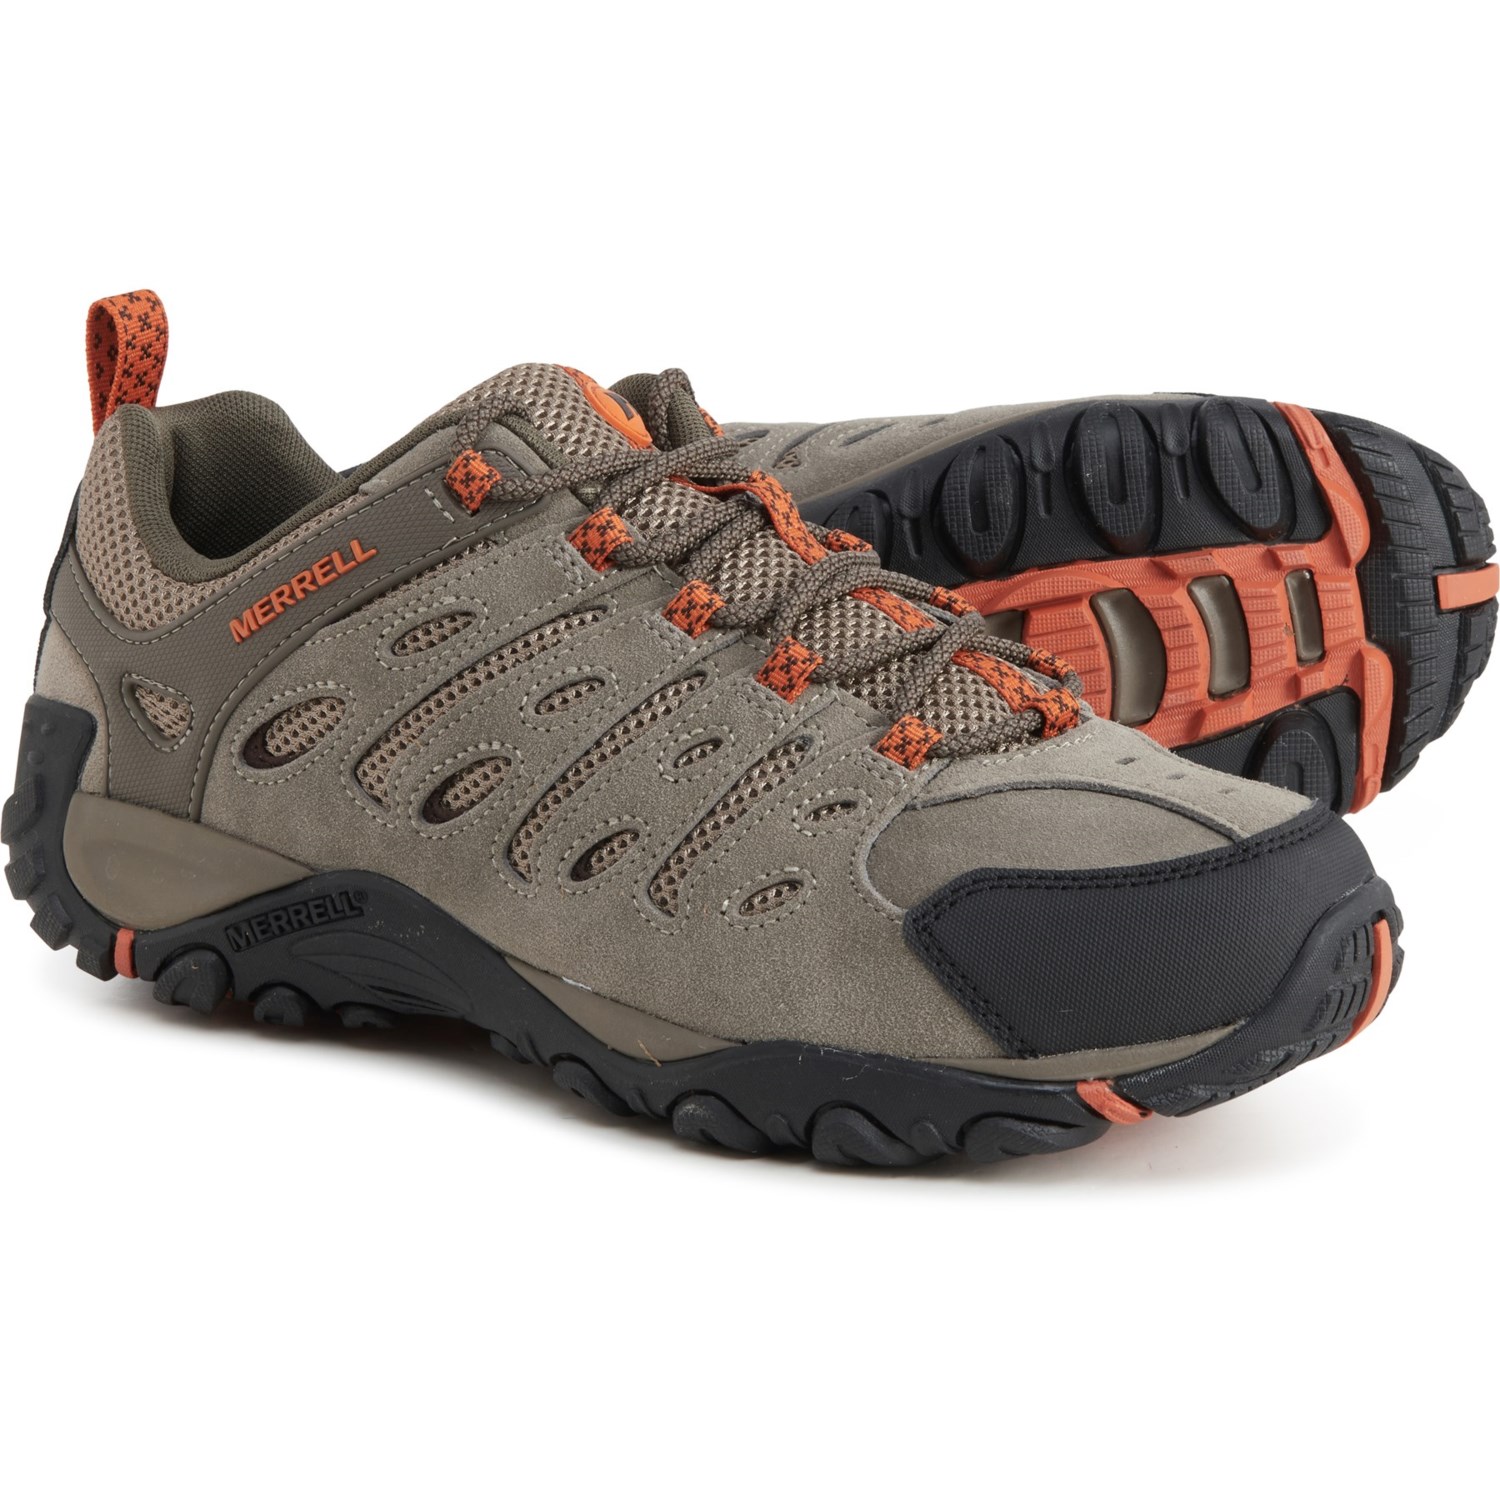 Merrell Crosslander 2 Hiking Shoes (For Men) - Save 25%